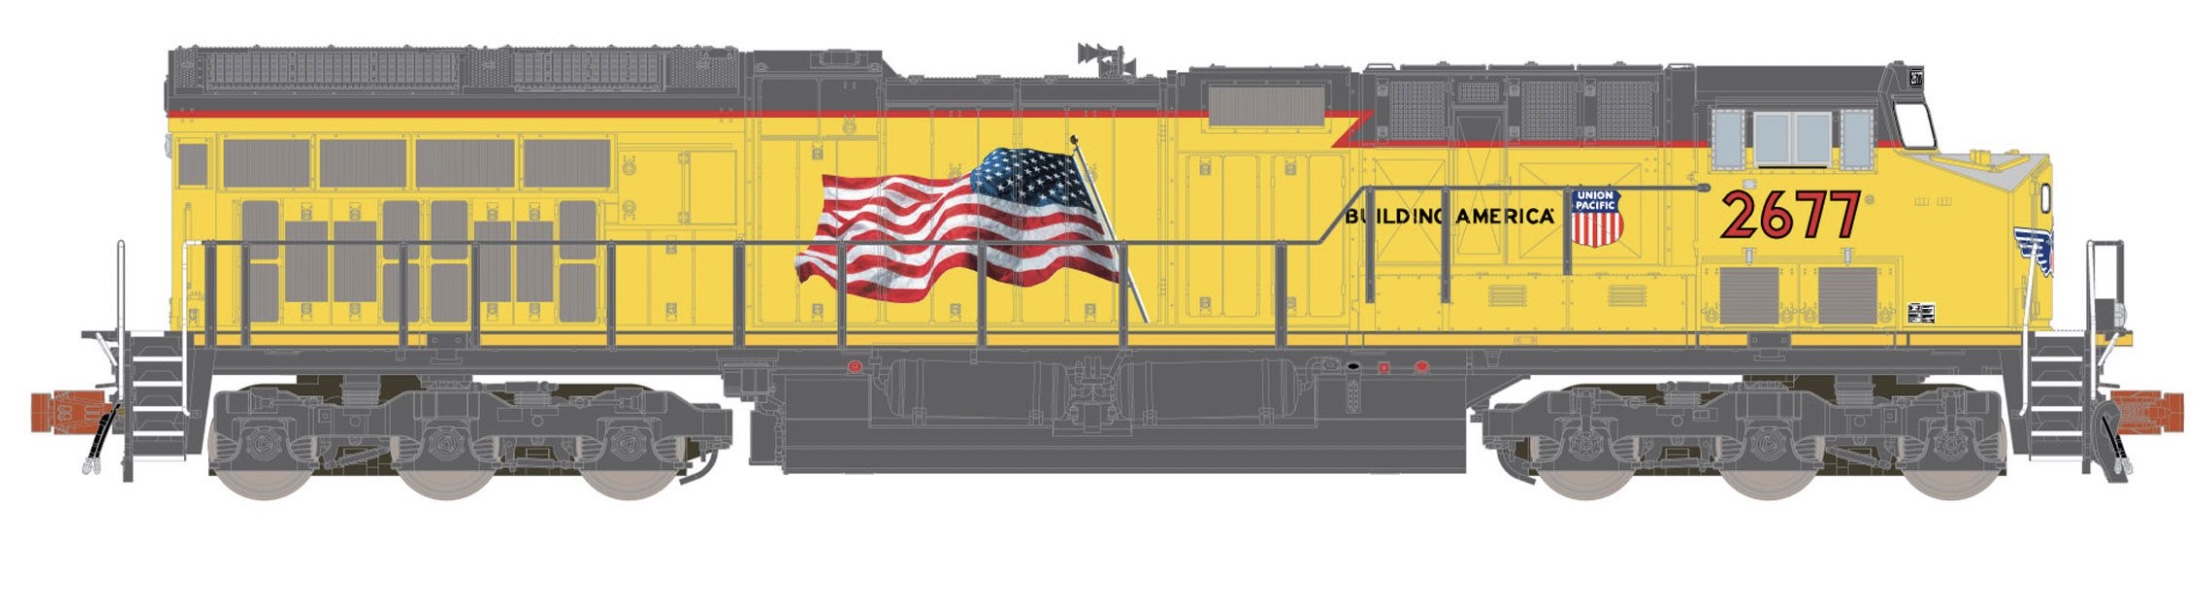 N Scale - ScaleTrains.com - SXT10992 - Locomotive, Diesel, GE C45AH - Union Pacific - 2677